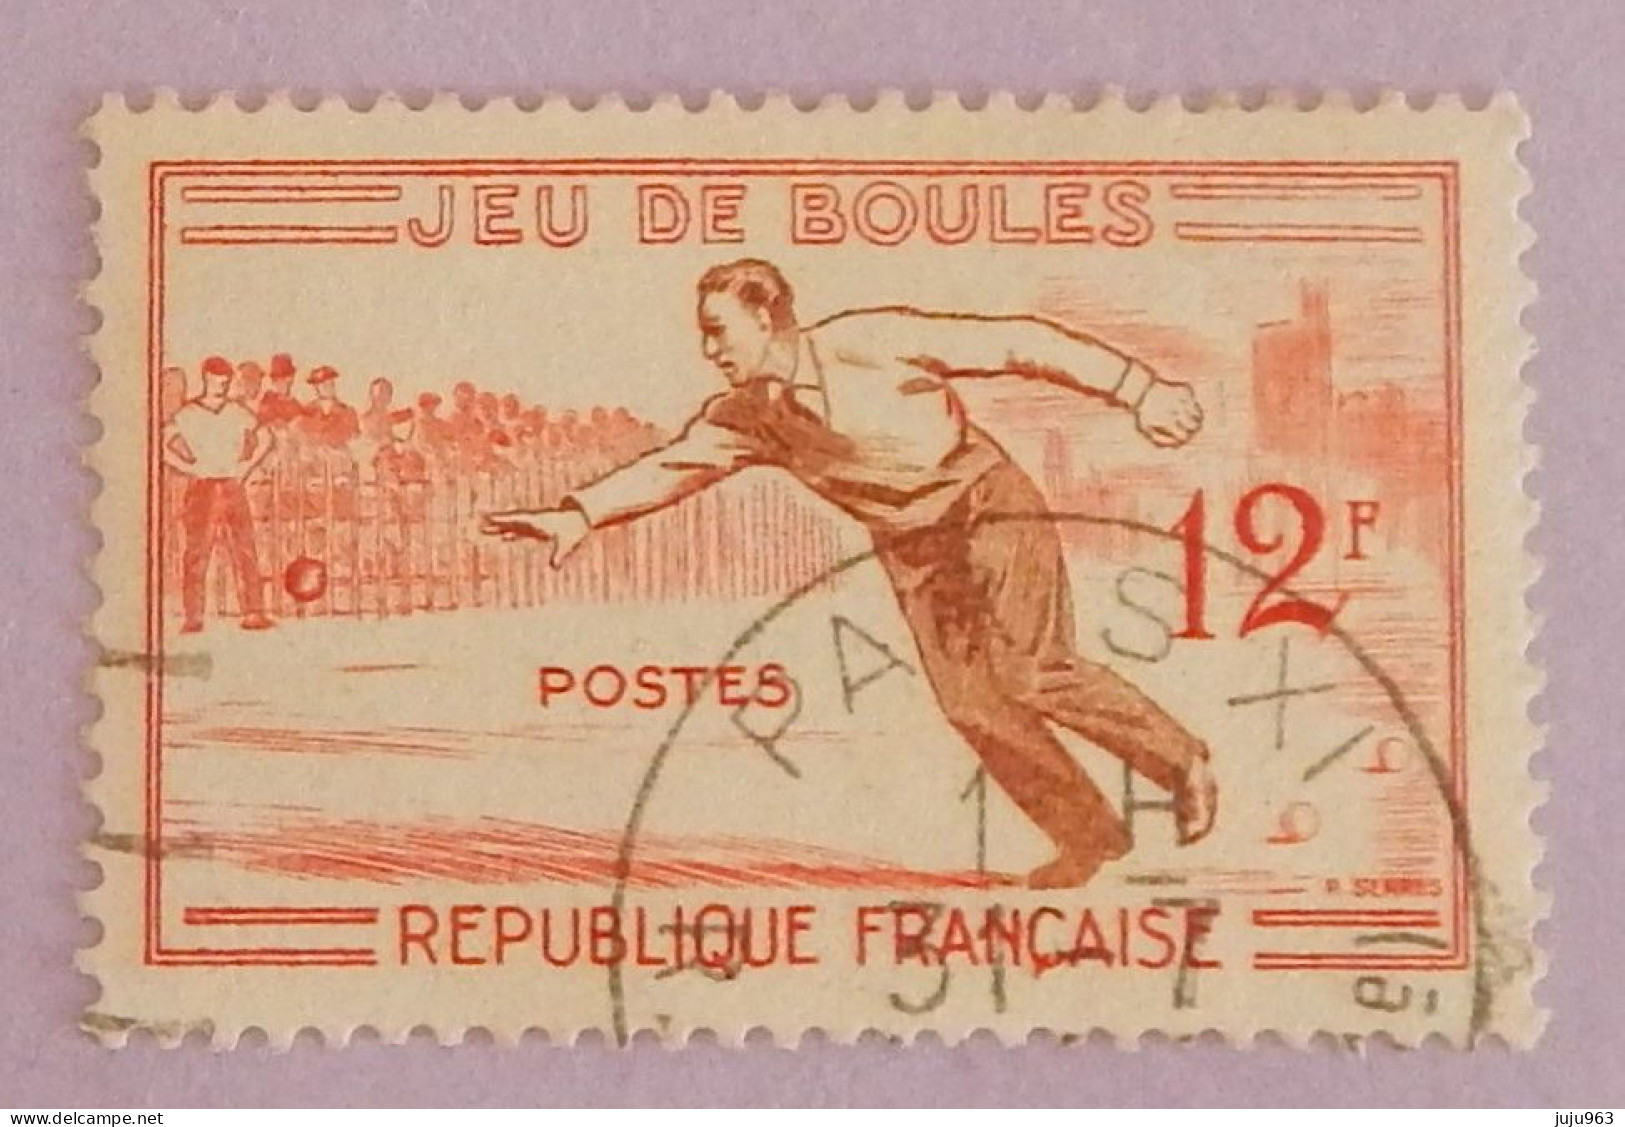 FRANCE YT 1161 CACHET ROND "JEU DE BOULES" ANNÉE 1958 - Usati